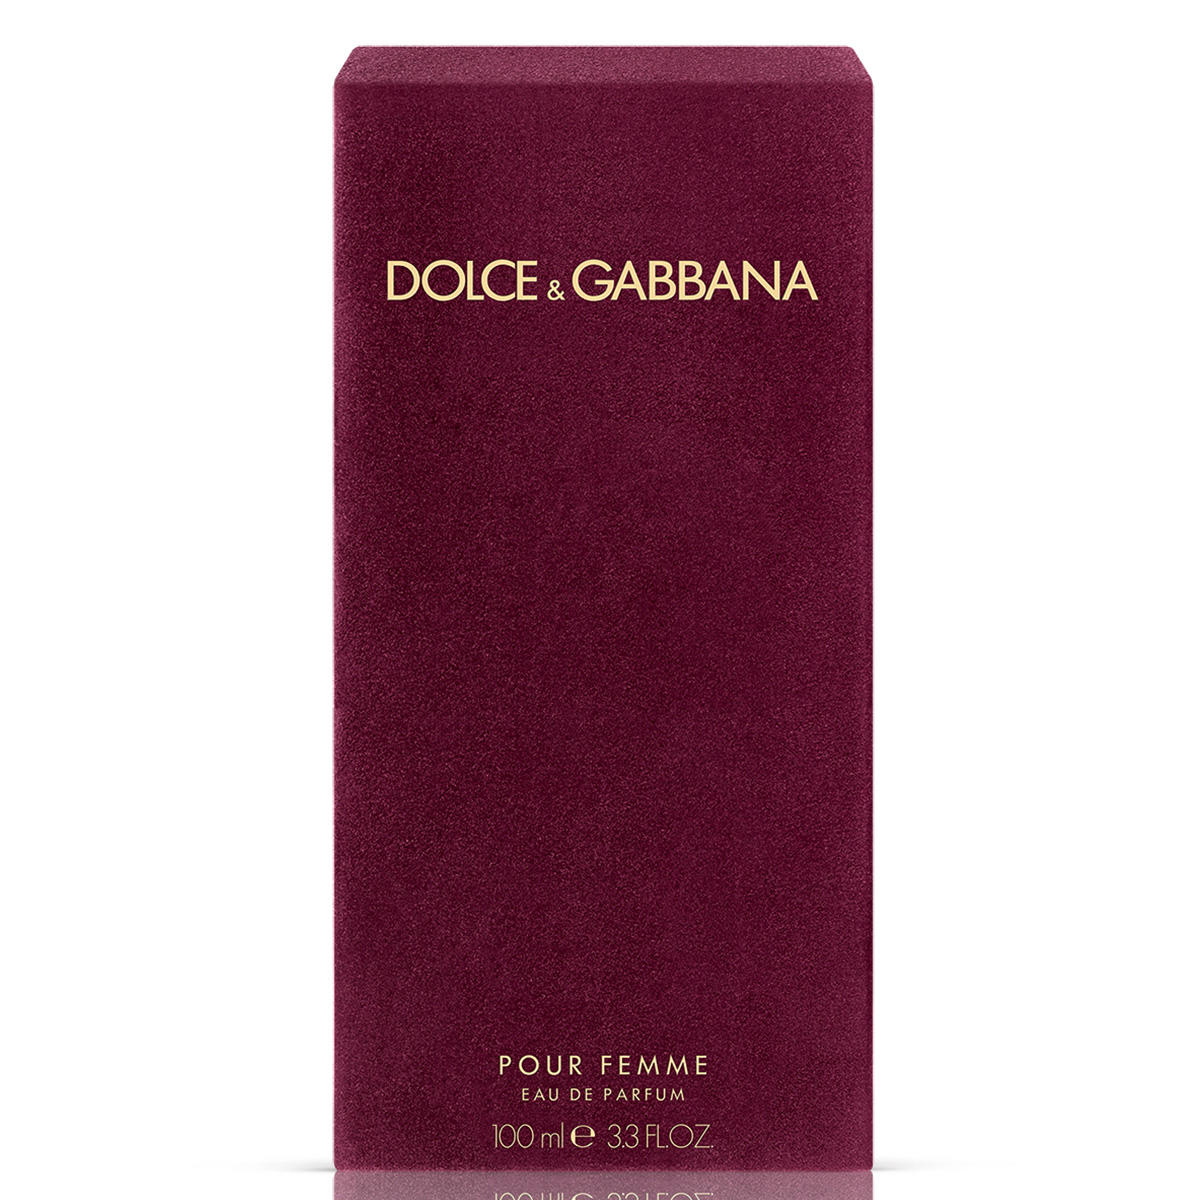 Dolce&Gabbana Pour Femme Eau de Parfum 100 ml - 3